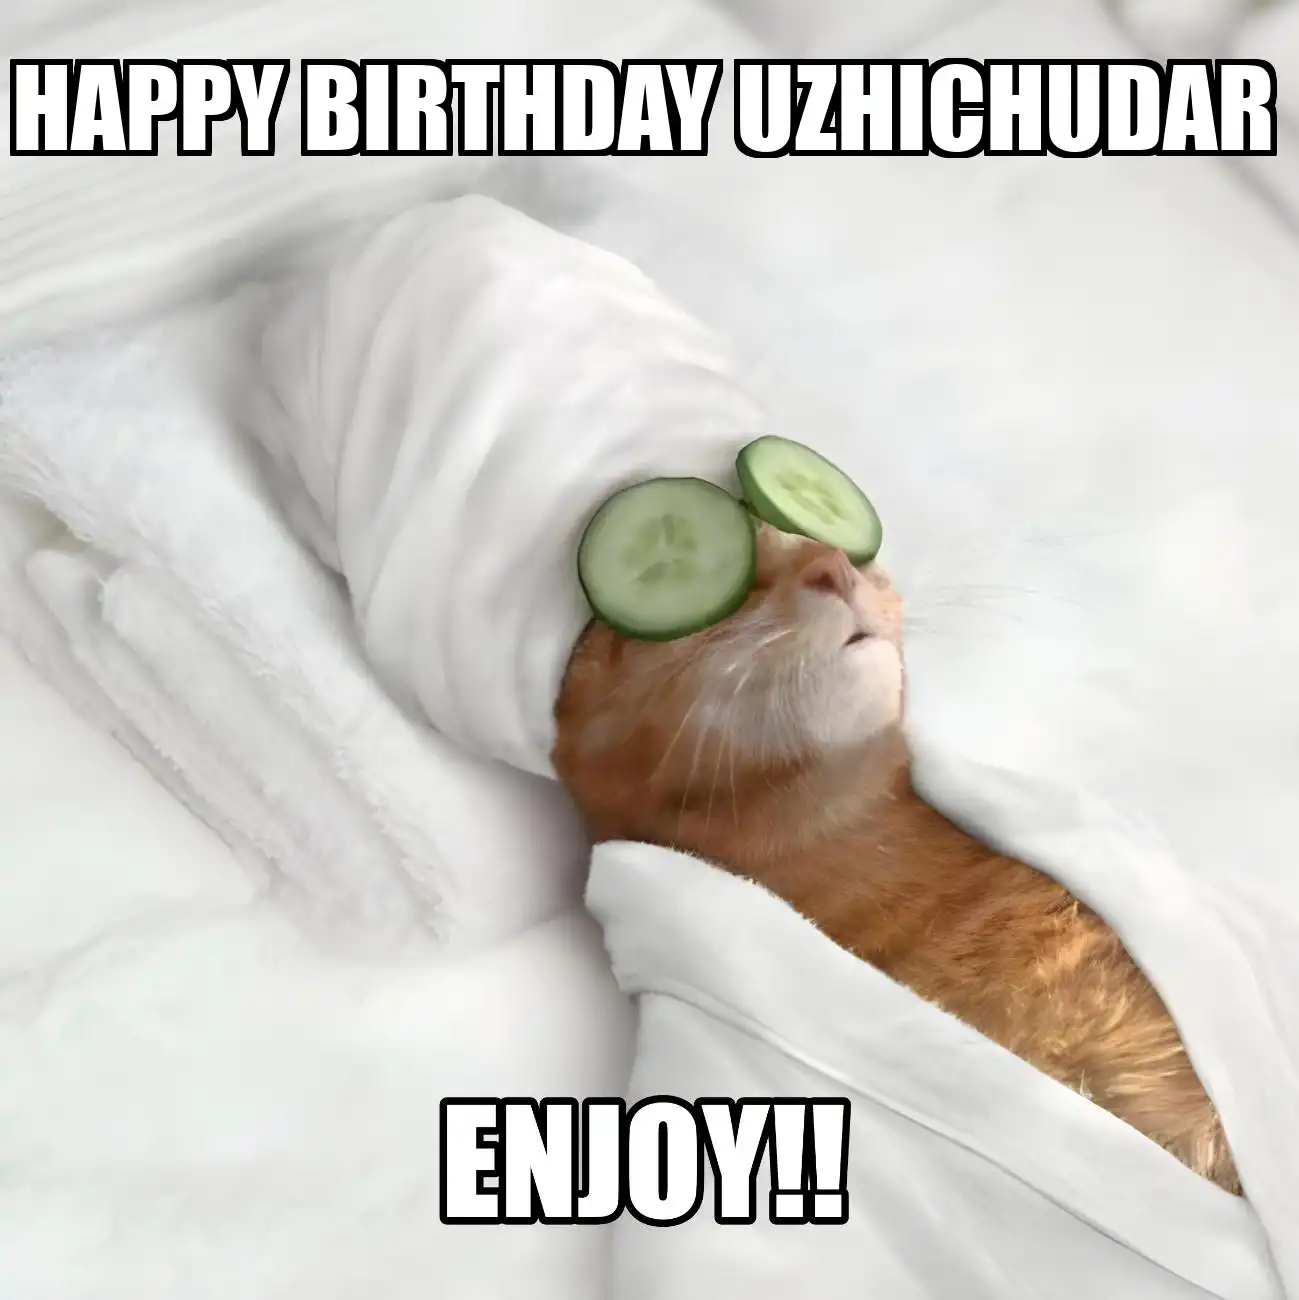 Happy Birthday Uzhichudar Enjoy Cat Meme